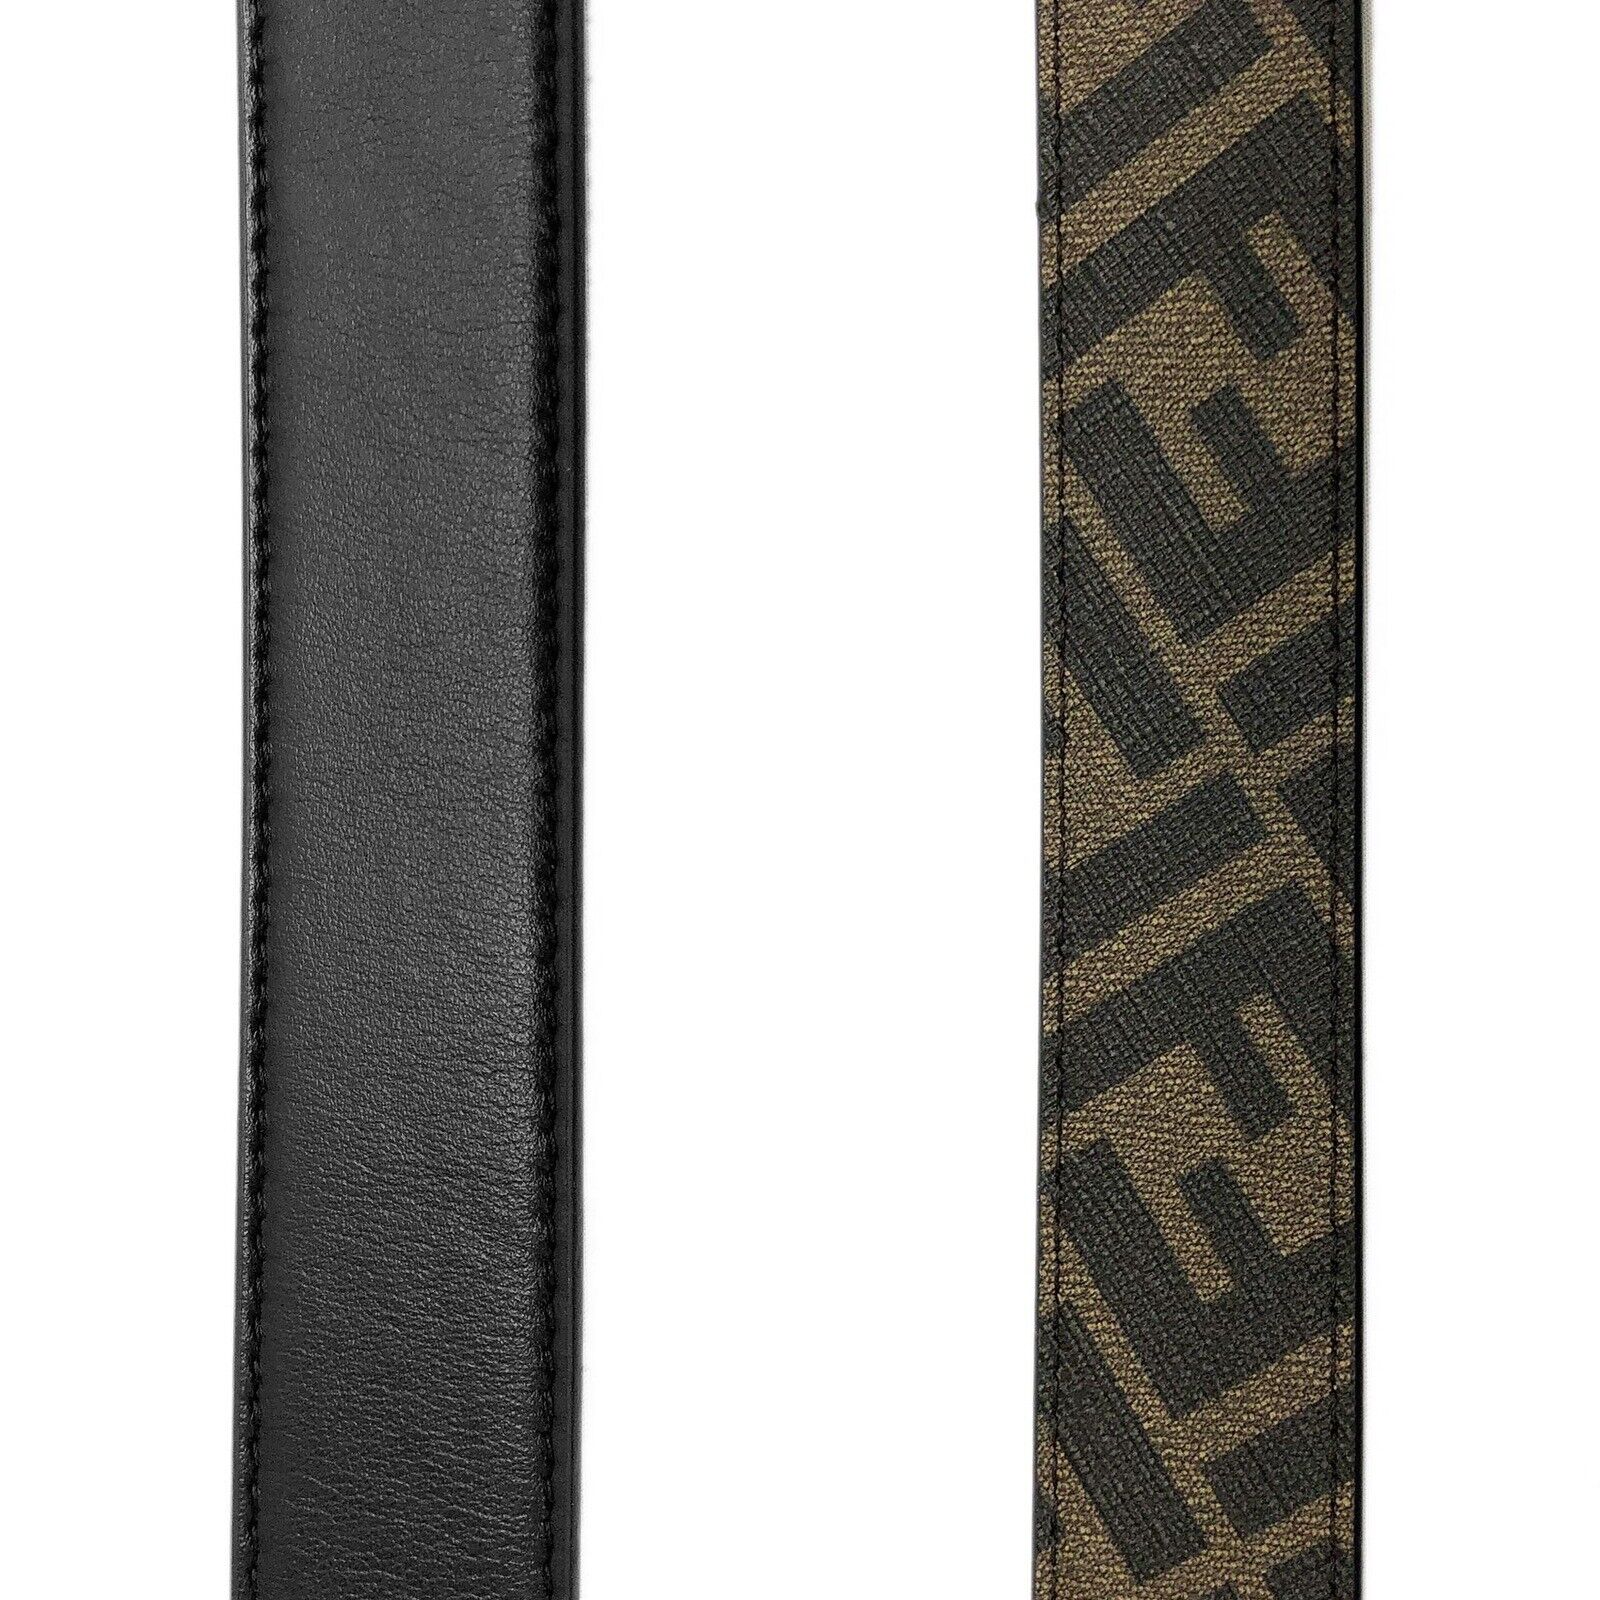 NWT $630 Ремень Fendi FF O'lock кожаный двусторонний черный/коричневый 100/40 Италия 7C0475